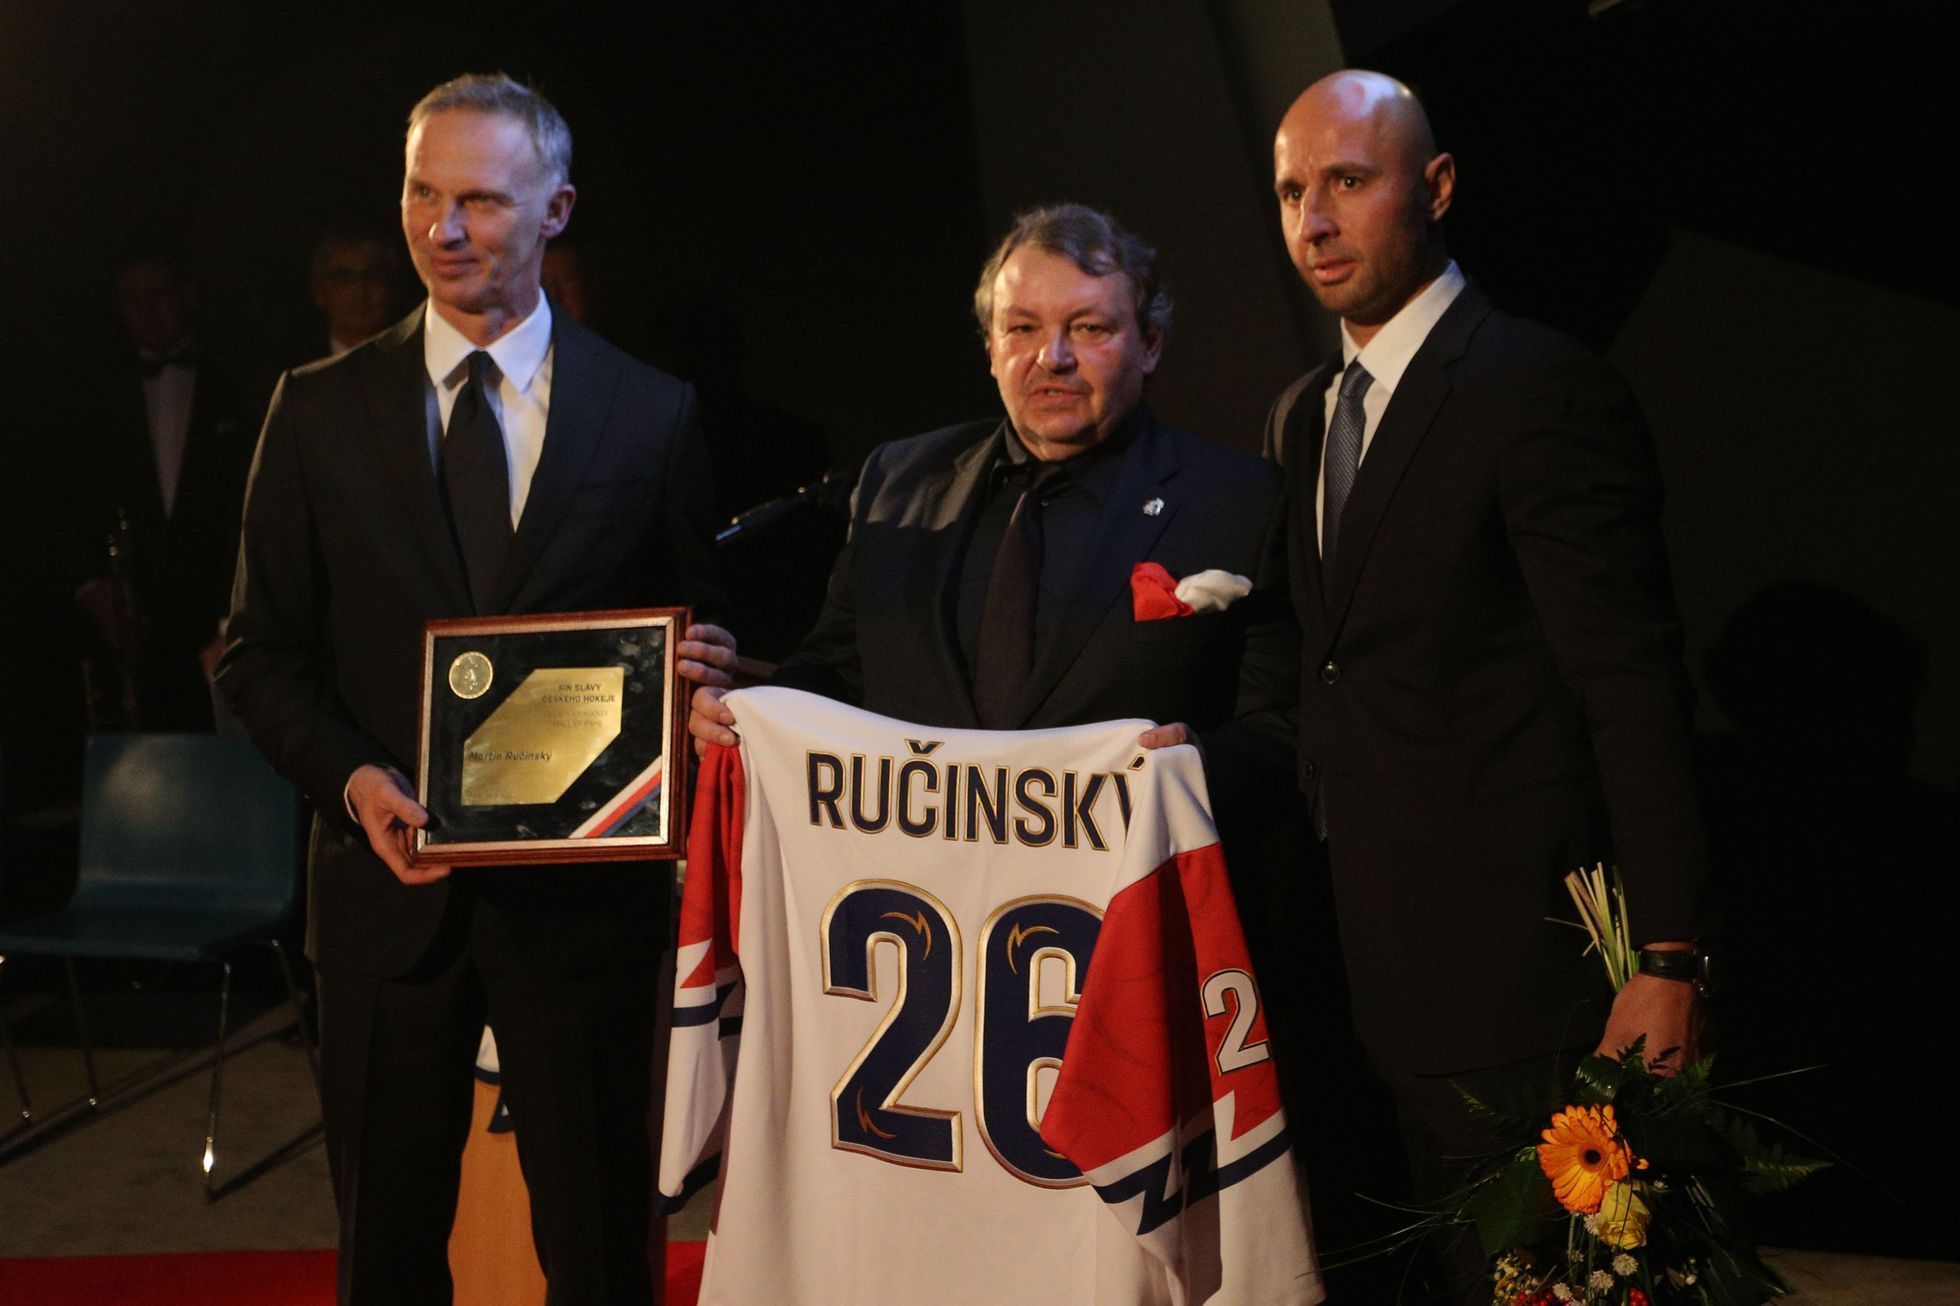 Noví členové Síně slávy českého hokeje (2019): Zleva Dominik Hašek, Tomáš Král a Martin Ručinský